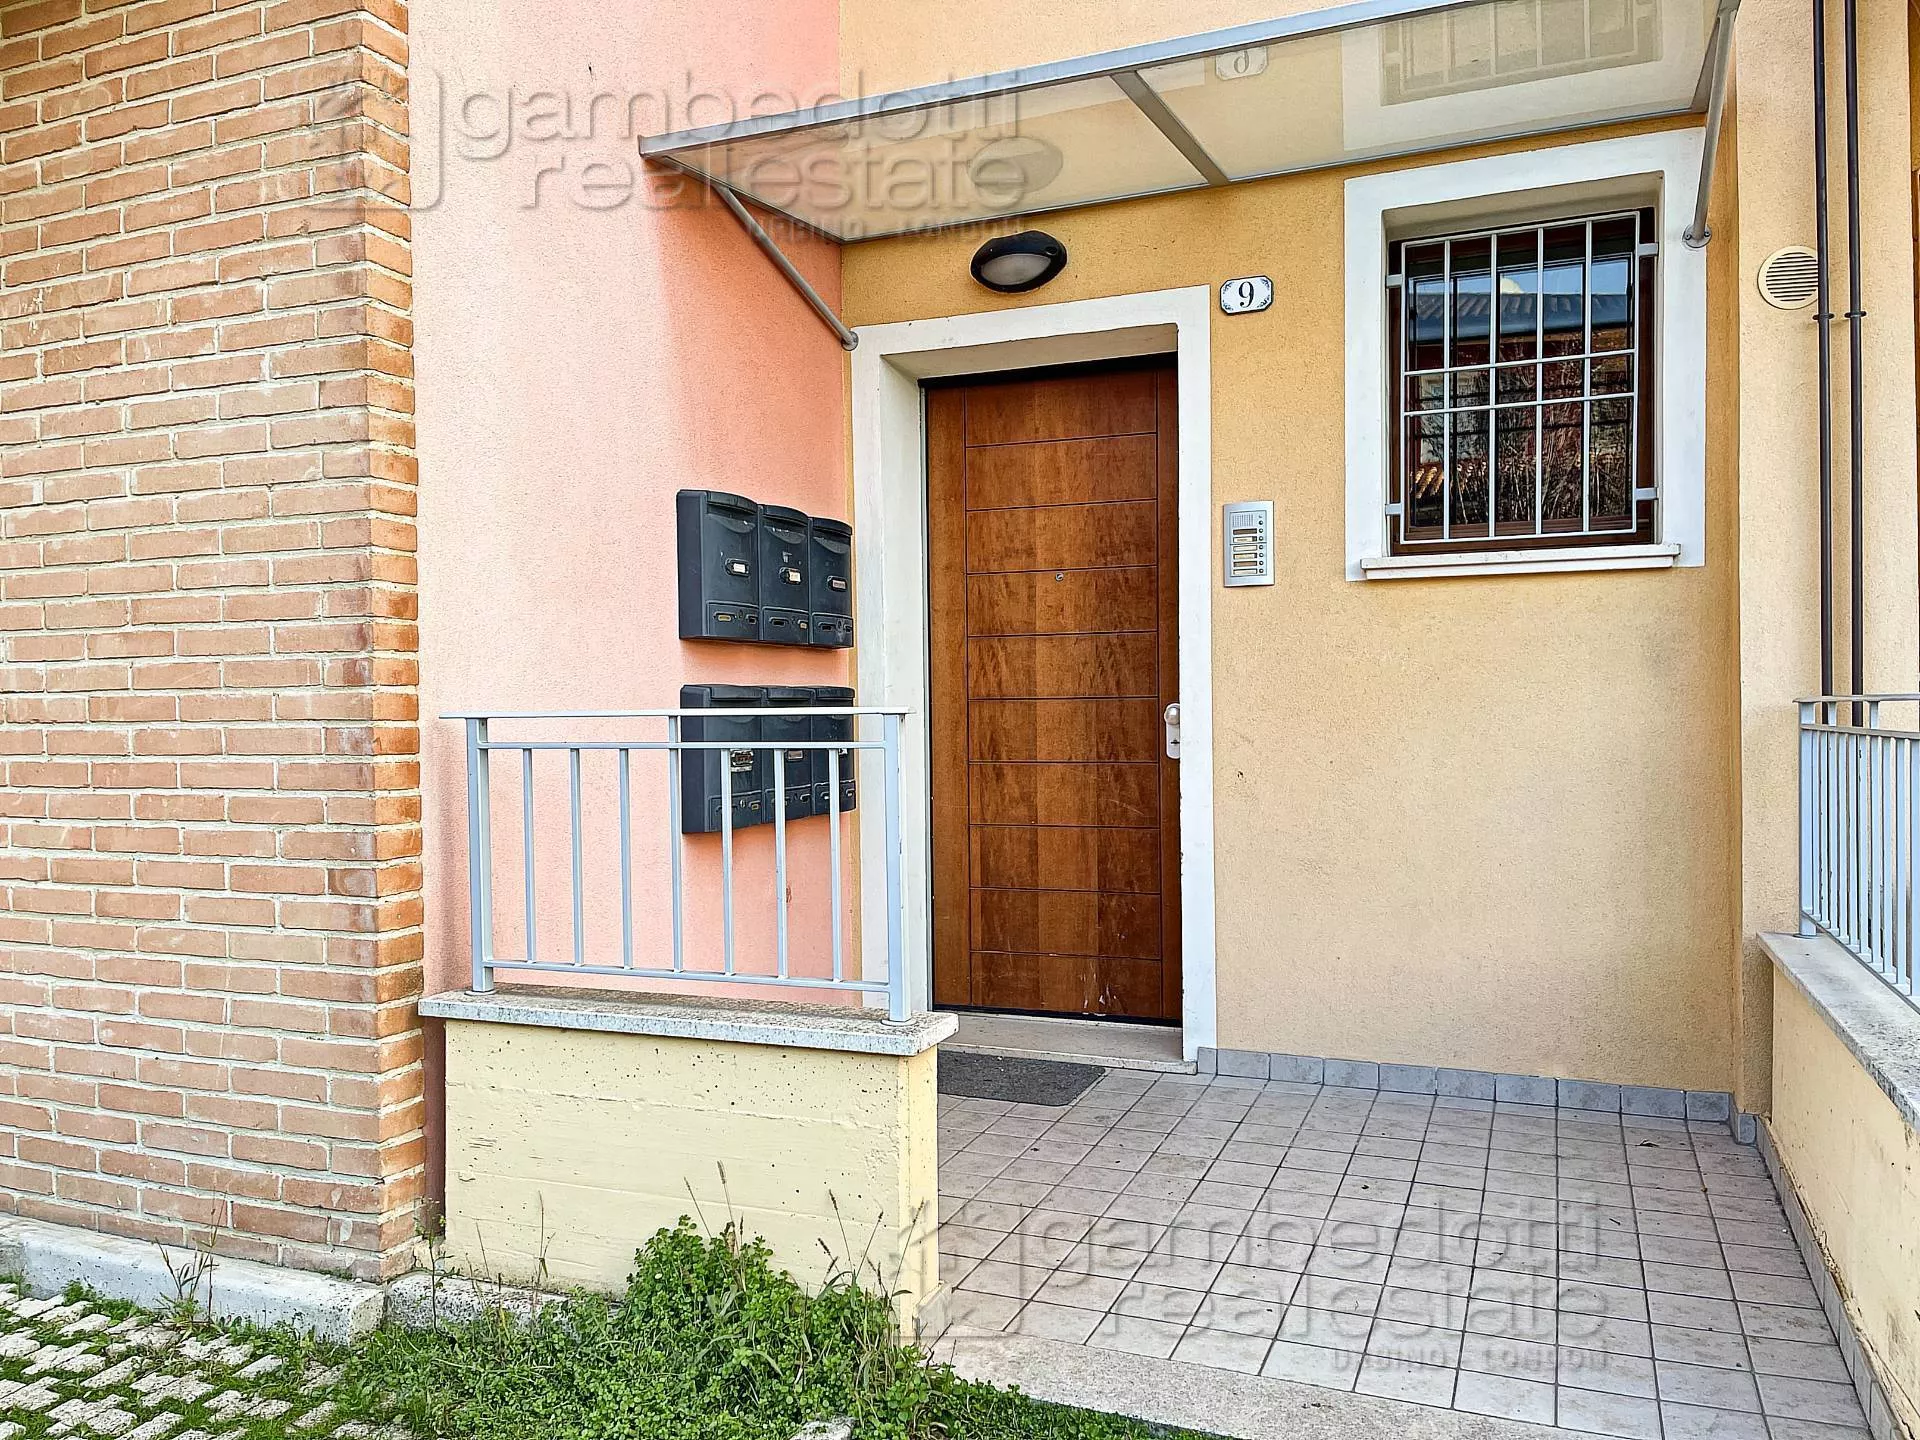 Immagine per Appartamento in vendita a Colli al Metauro